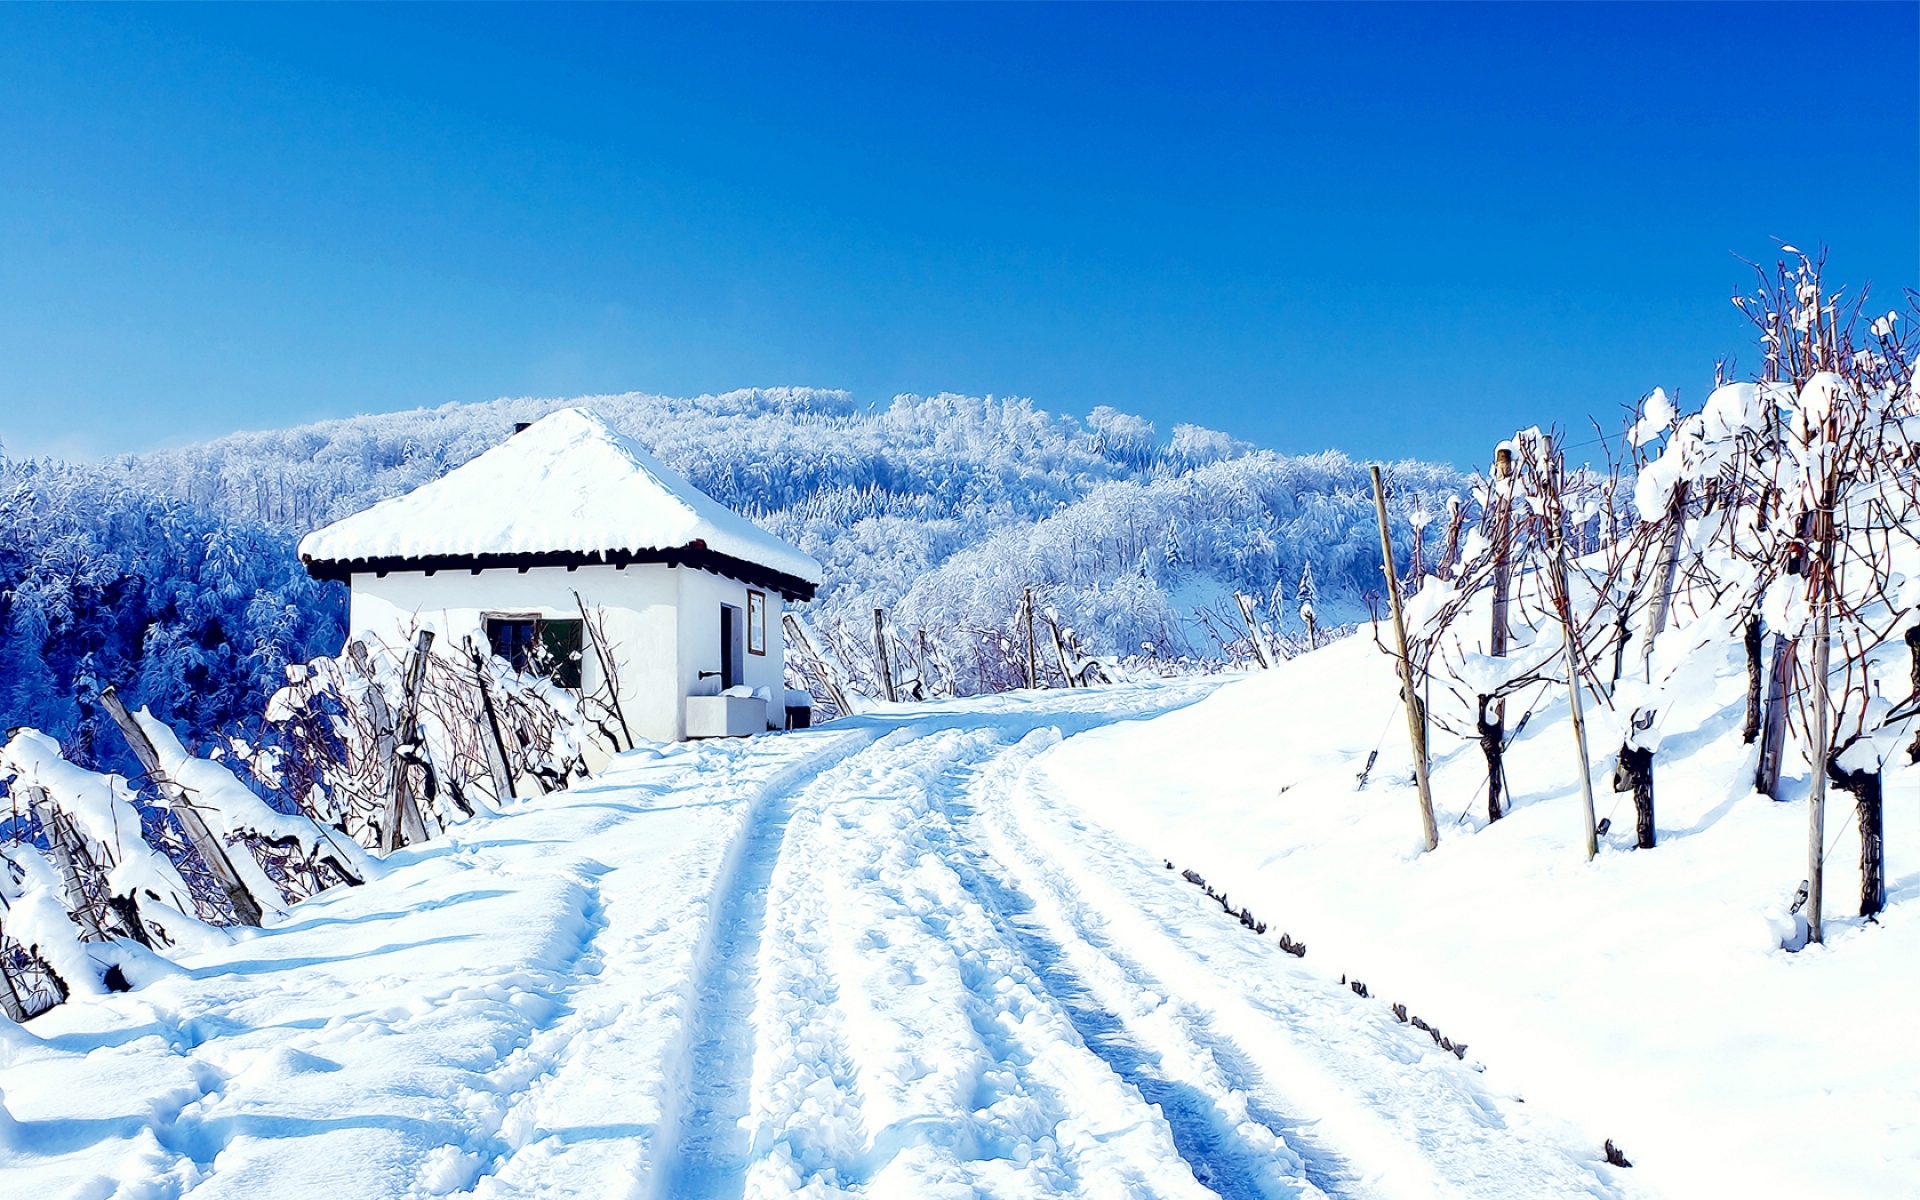 电脑主题图片大全 冬季雪景唯美自然风光图片(5)